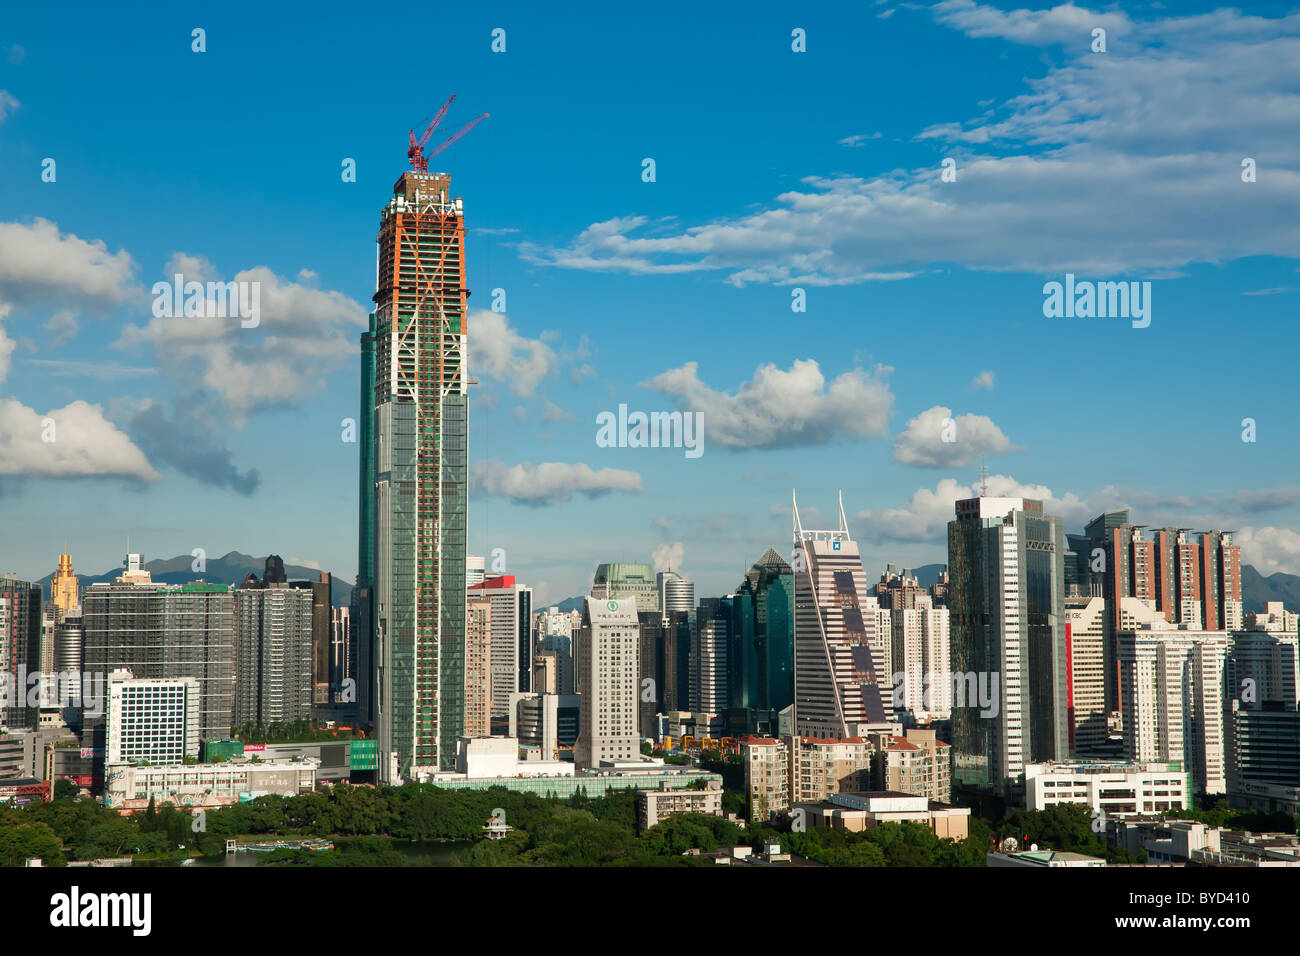 City skyline of Shenzhen, China Stock Photo